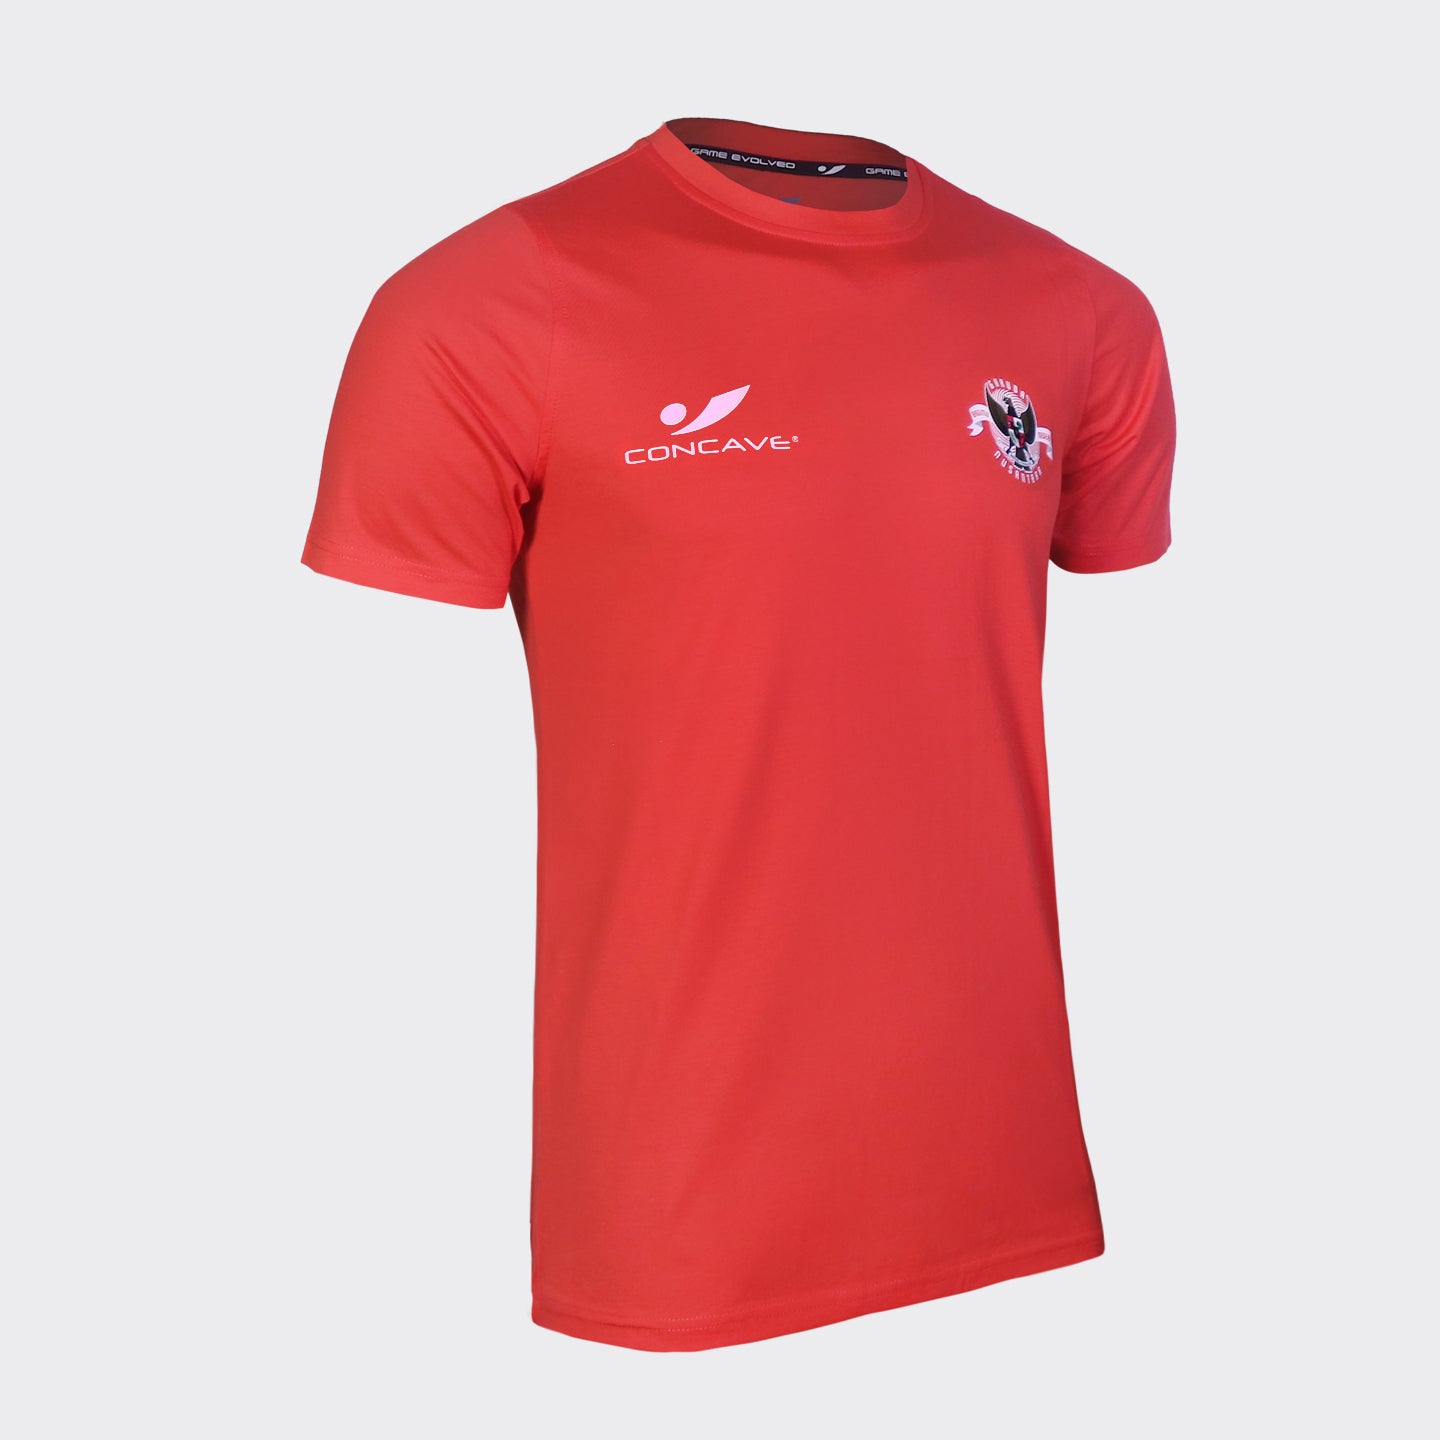 T-shirt Kita Garuda - Red